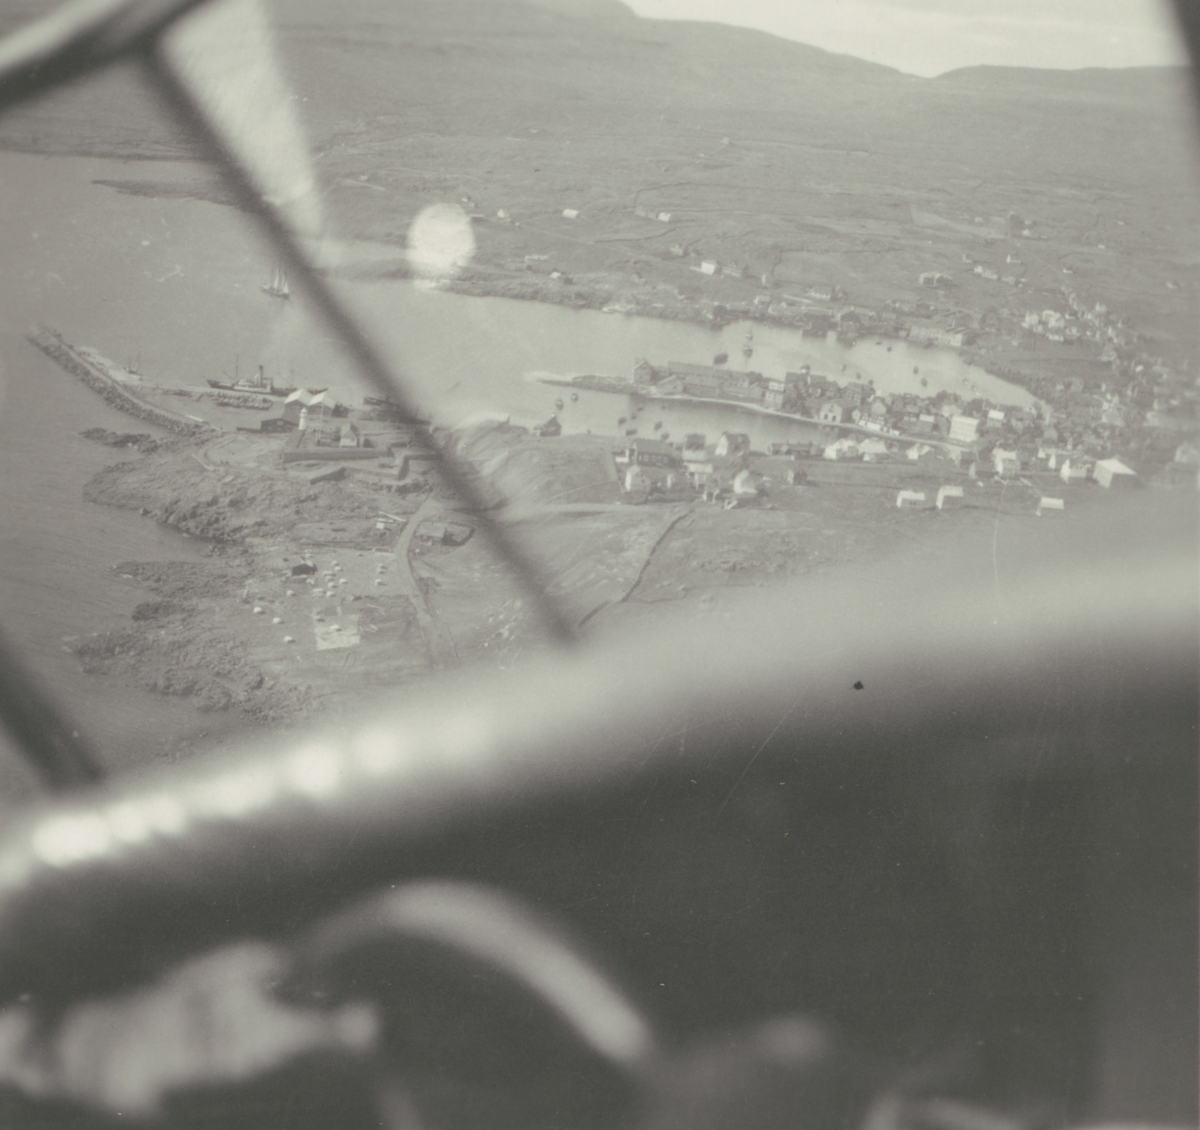 Fotografi från Albin Ahrenbergs resa till Grönland 1929. Vy över liten kuststad i bergslandskap.